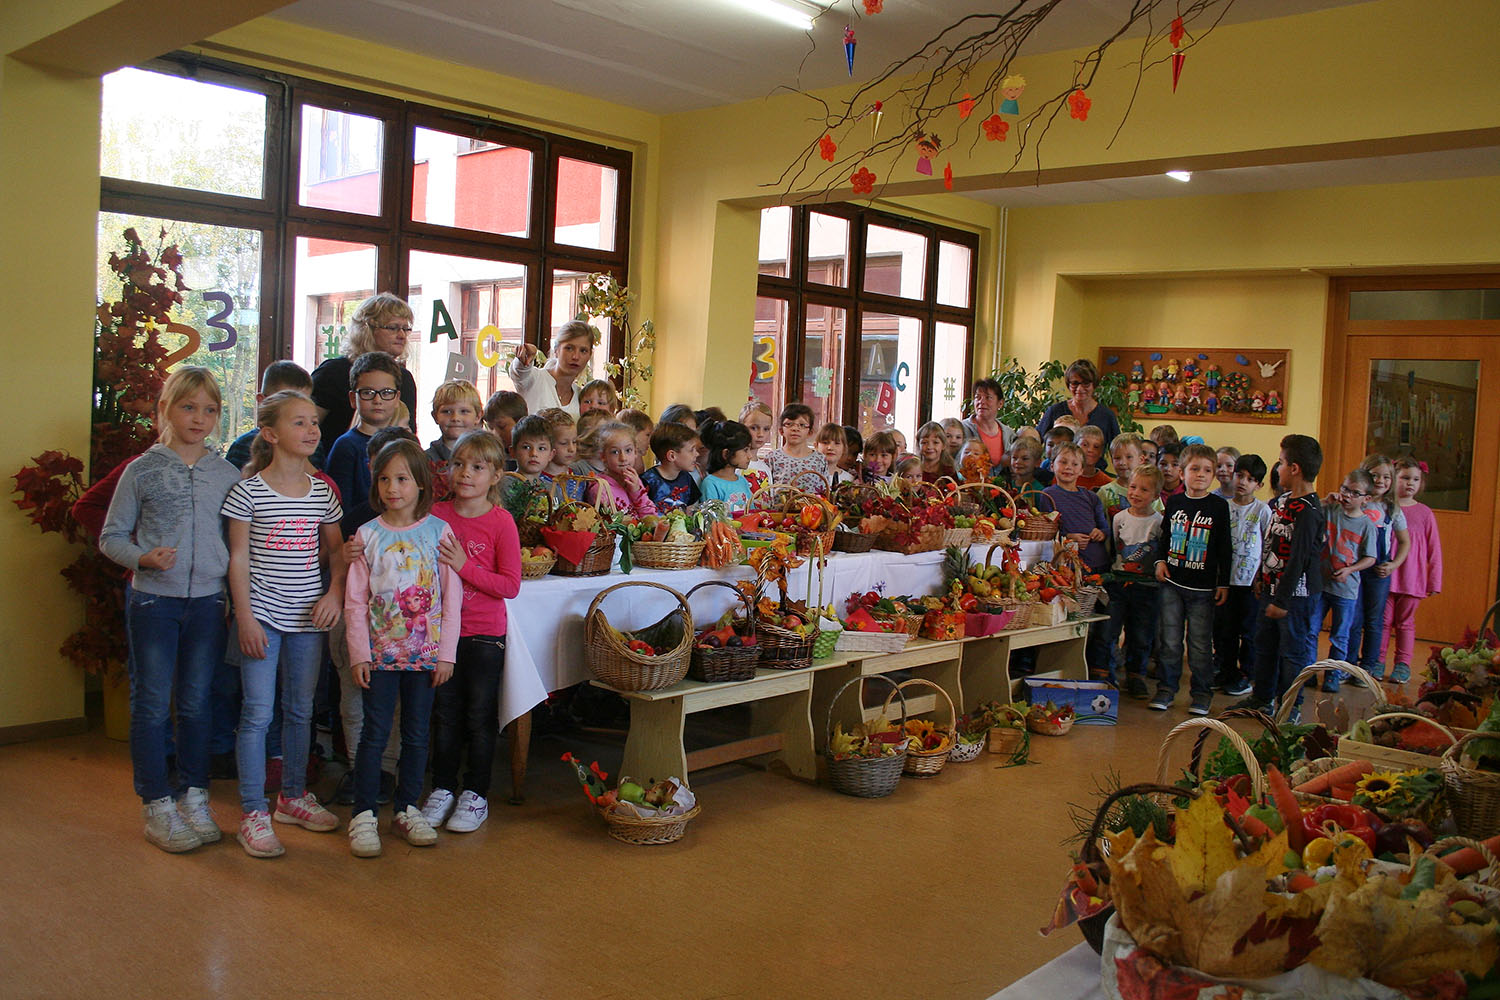 Grundschule Pohlitz: Kunterbunte Herbstwoche mit vielen Aktivitäten